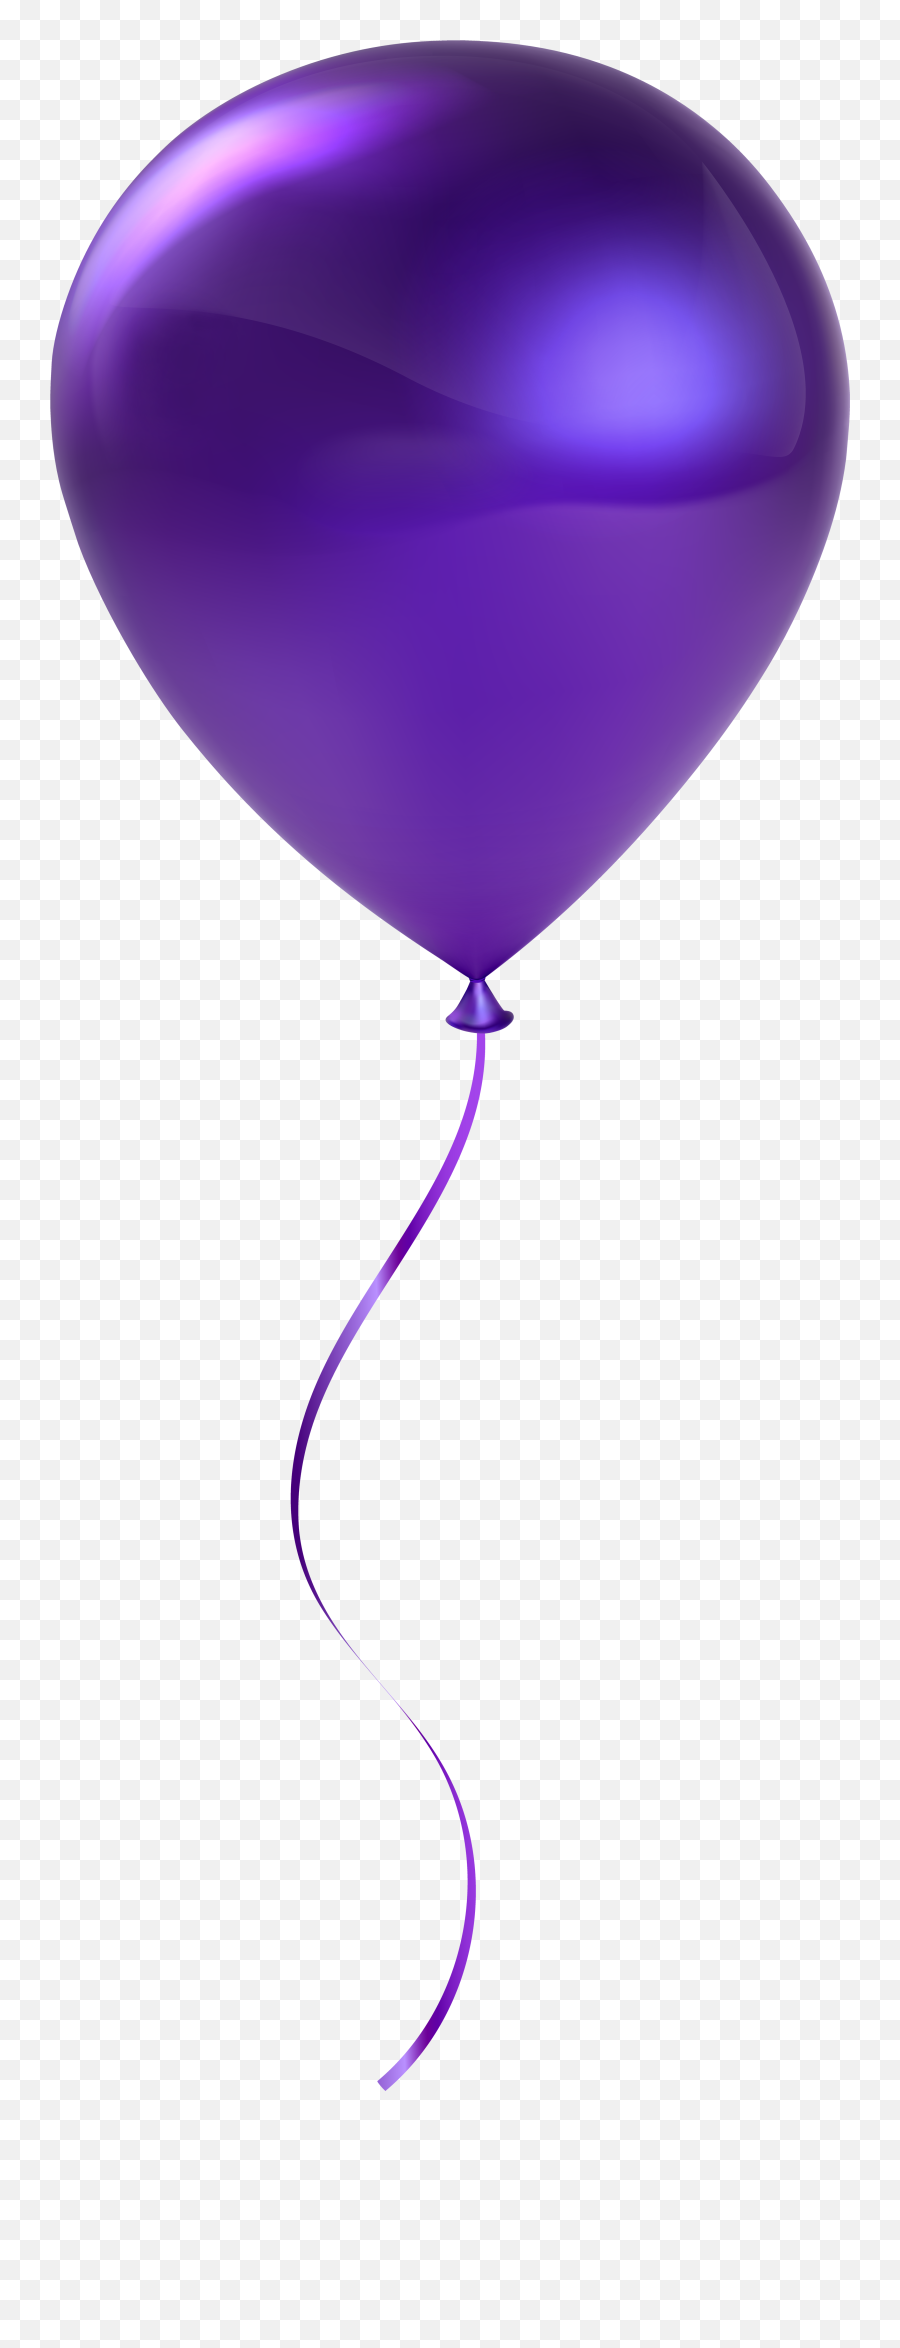 Clipart Balloons Violet Transparent - Purple Balloon Transparent Background Png,Balloons Transparent